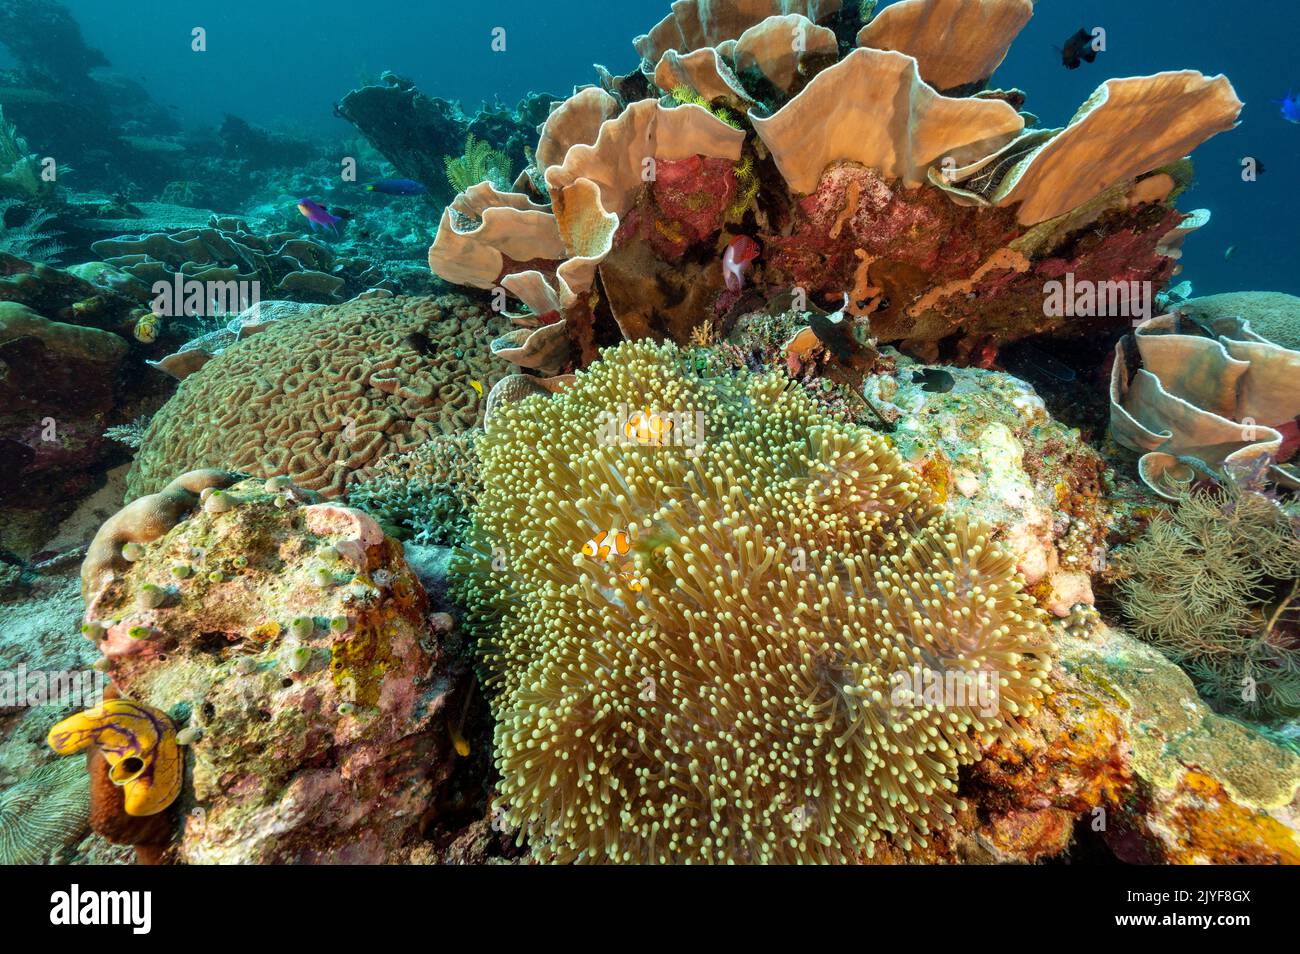 Poissons communs, Amphiprion ocellaris, et anémone de mer magificient, Heteractis magifica, Raja Ampat Indonésie. Banque D'Images